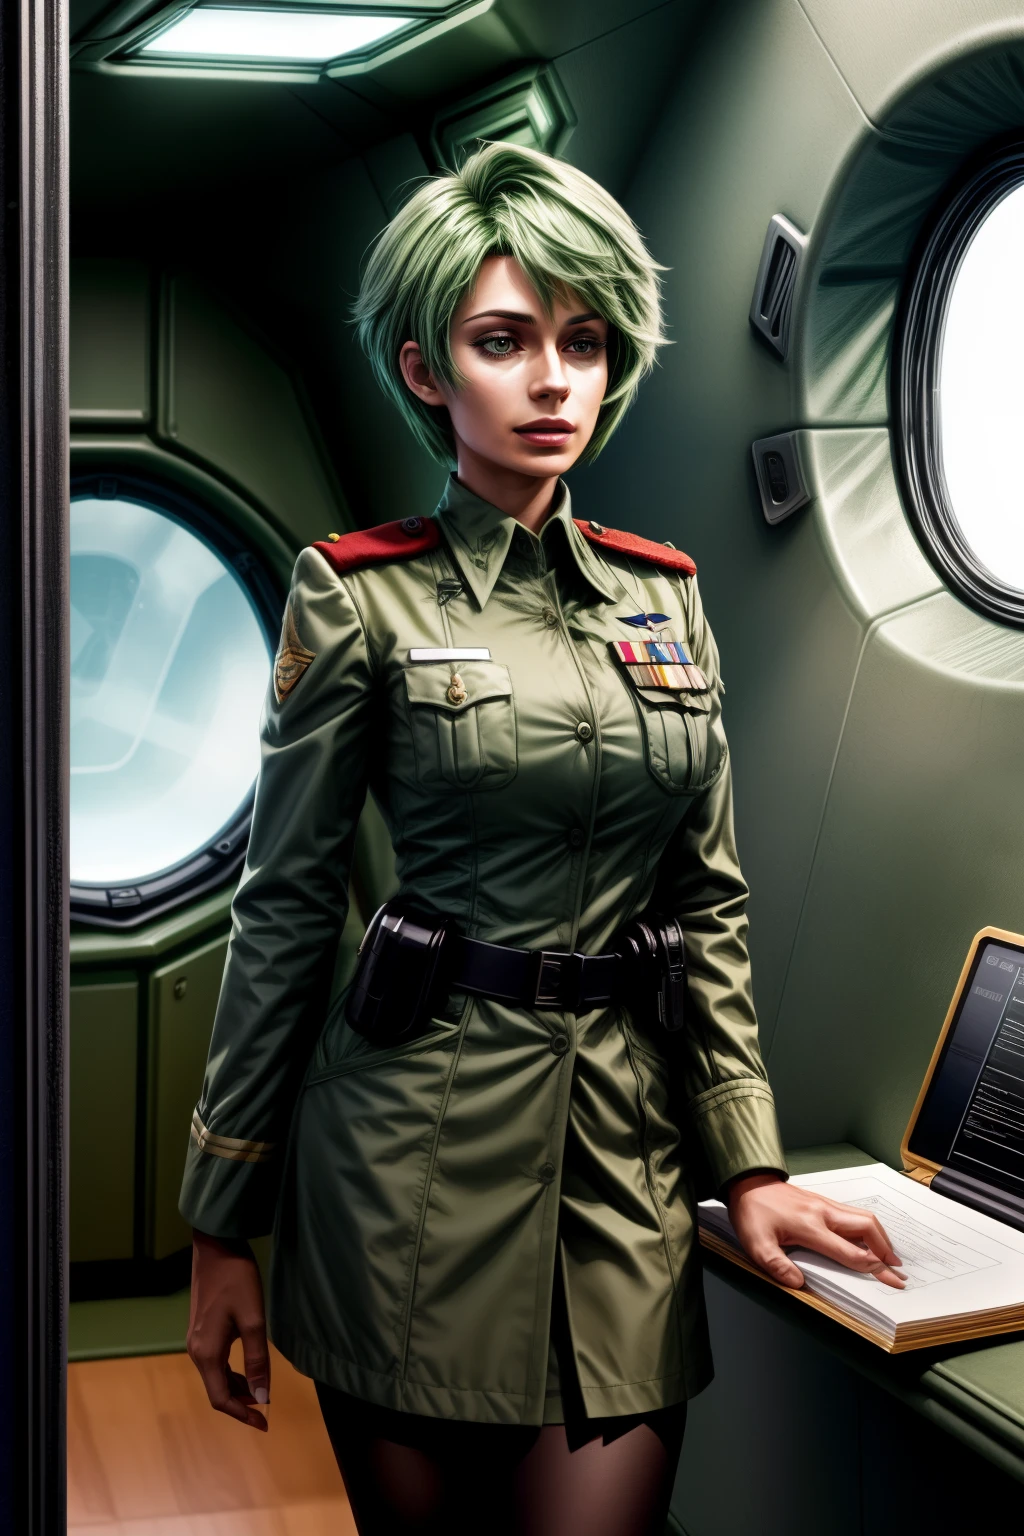 弗雷德里卡·格林希尔, 25岁, 捷径, 绿色头发, 中尉&#39;制服, 有剪贴板, 通过对讲机交谈, 飞船内部